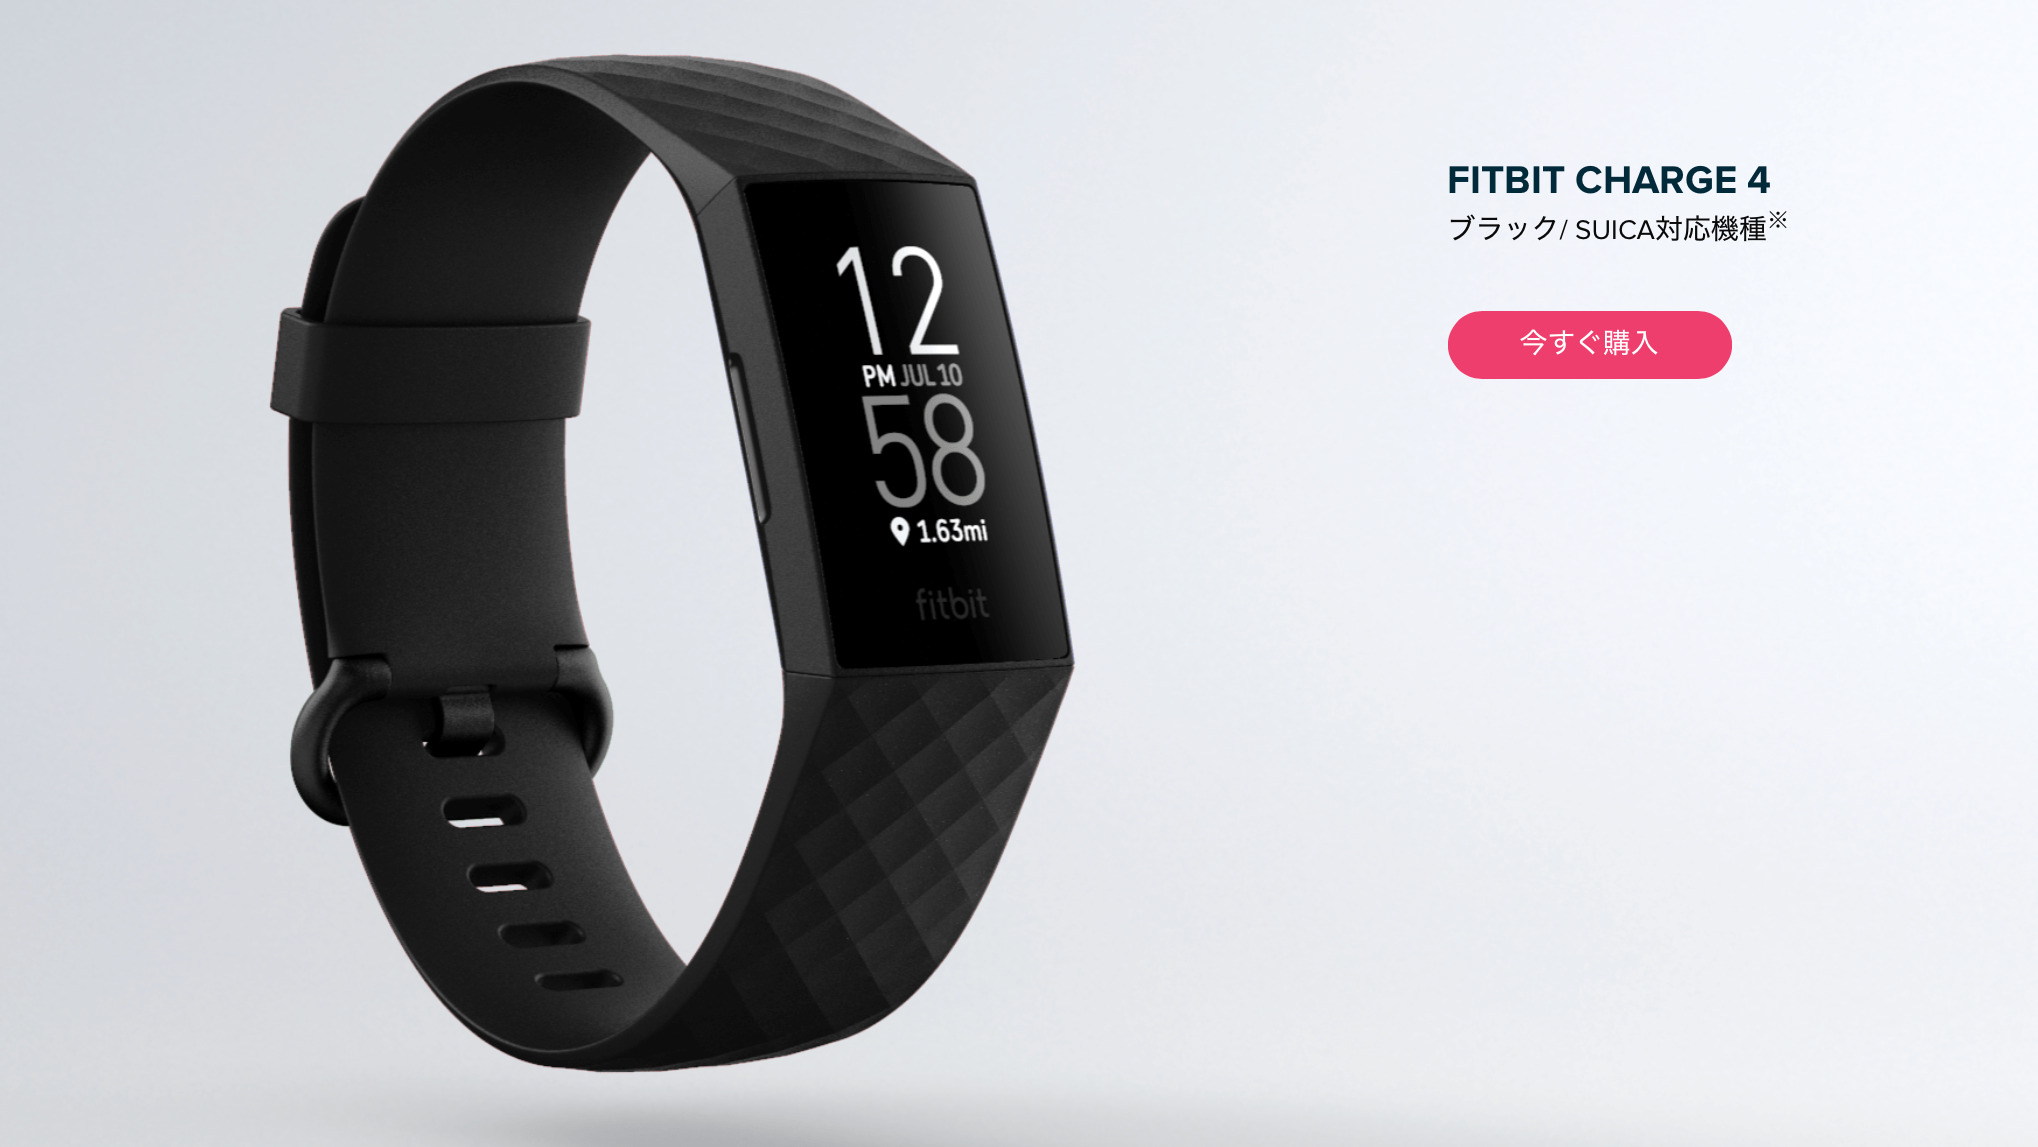 「Fitbit Charge 4」に買いたい理由と買わない理由、どちらもSuicaがポイント | きなこぱん